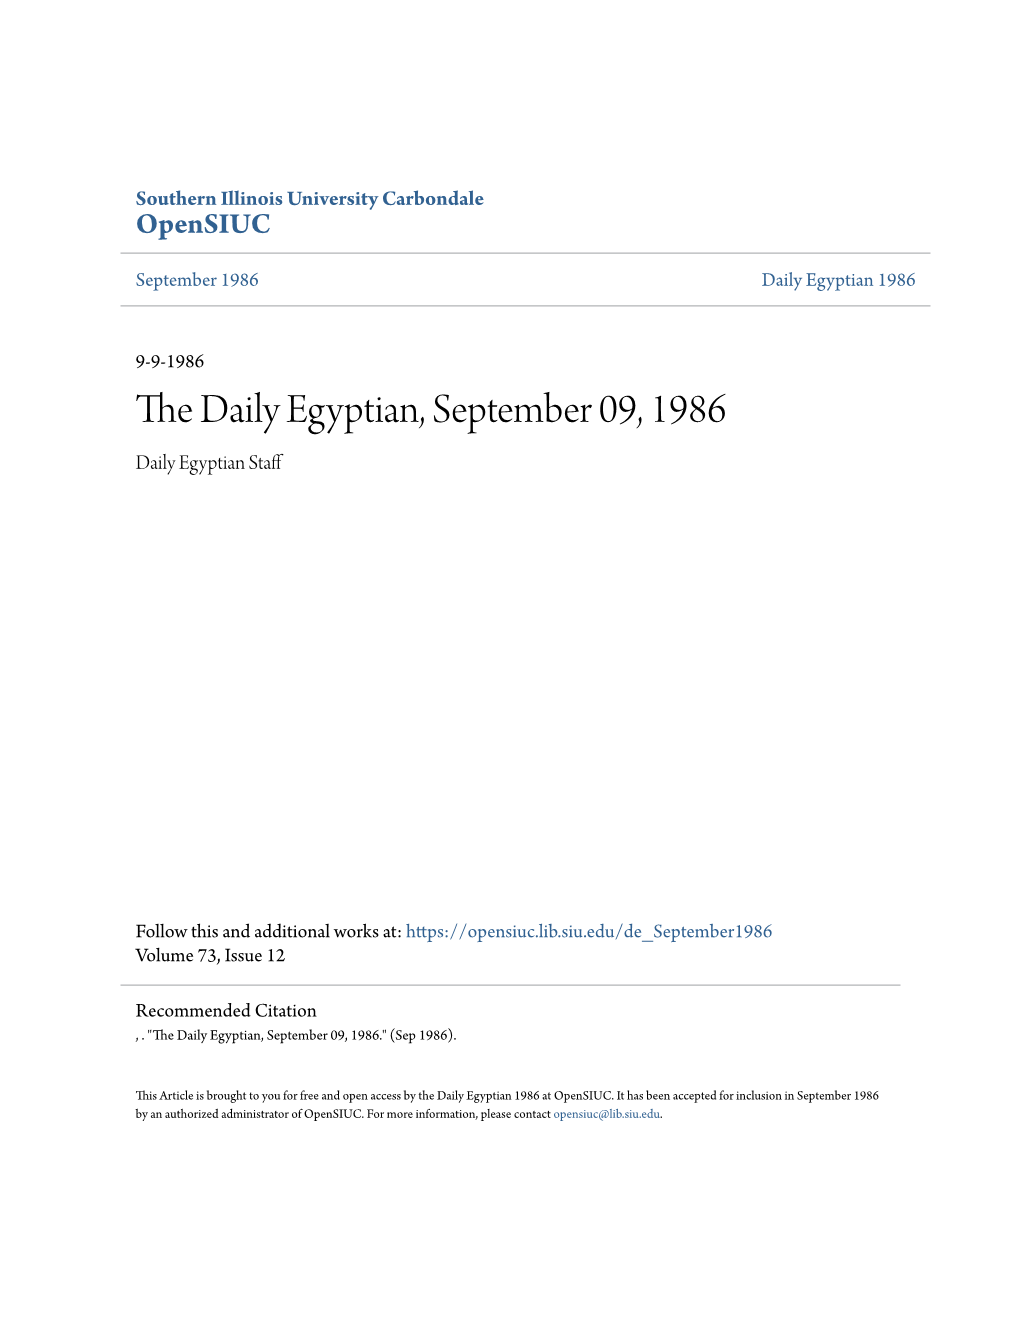 The Daily Egyptian, September 09, 1986